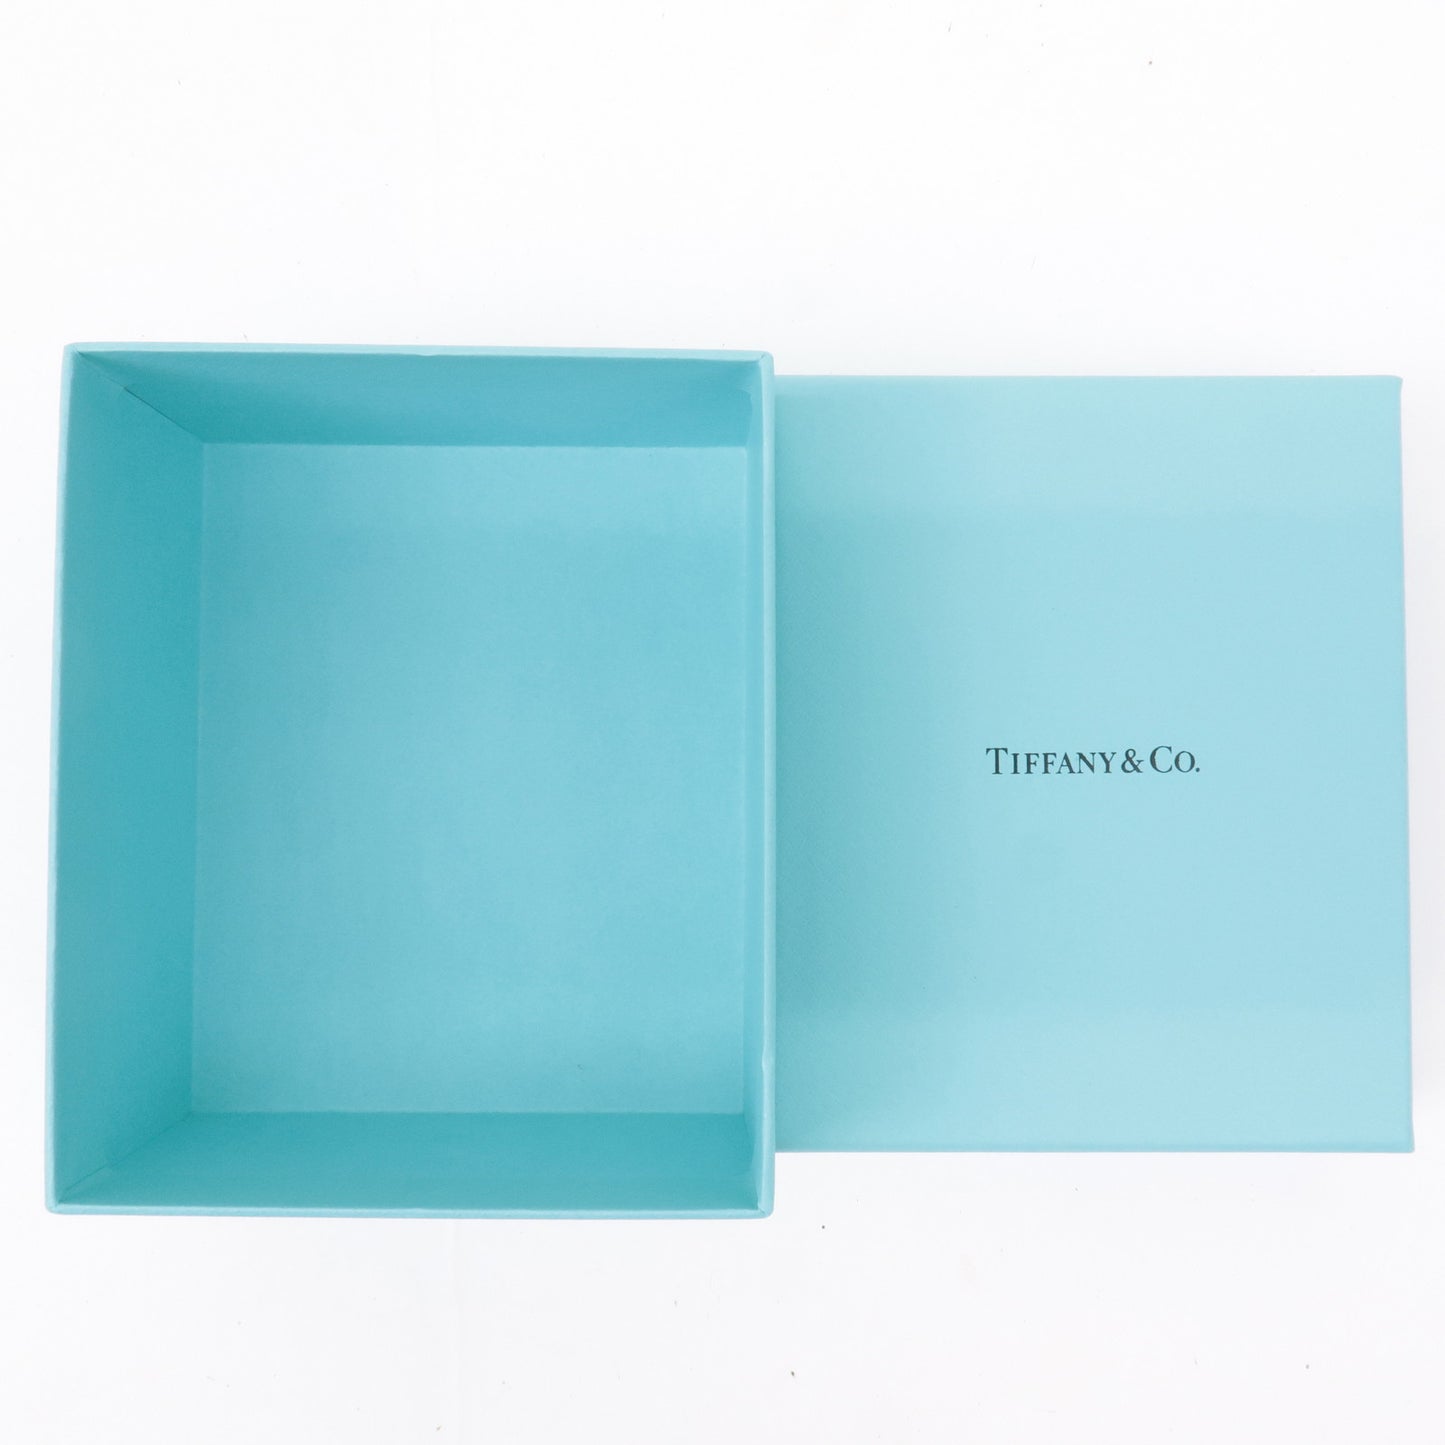 Tiffany&Co. Set of 2 Jewelry Box Necklace Box Tiffany Blue